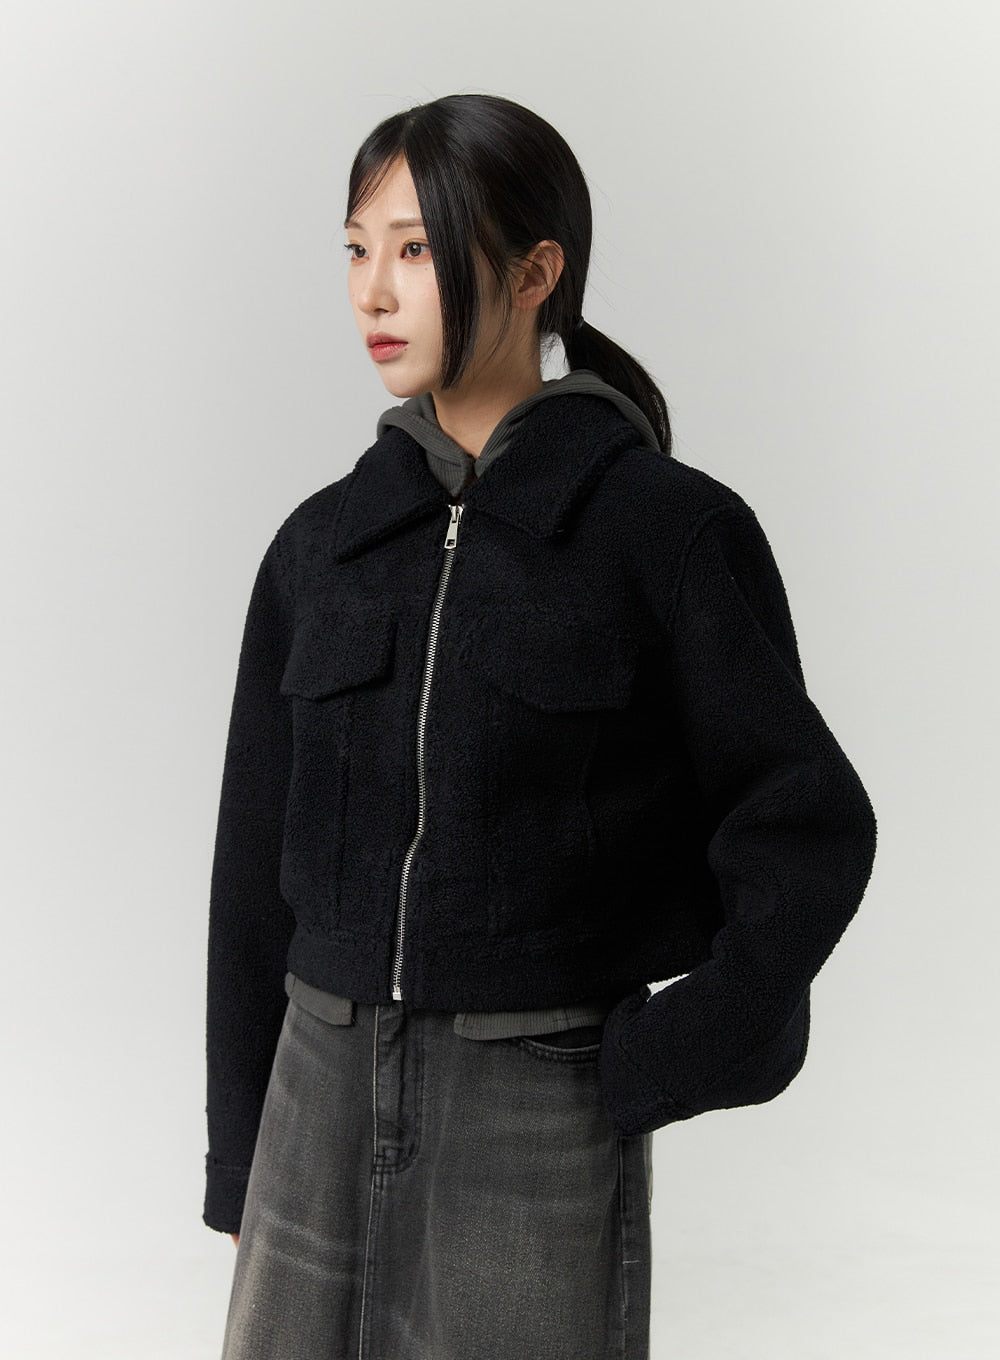 pocket-faux-fur-jacket-cn320